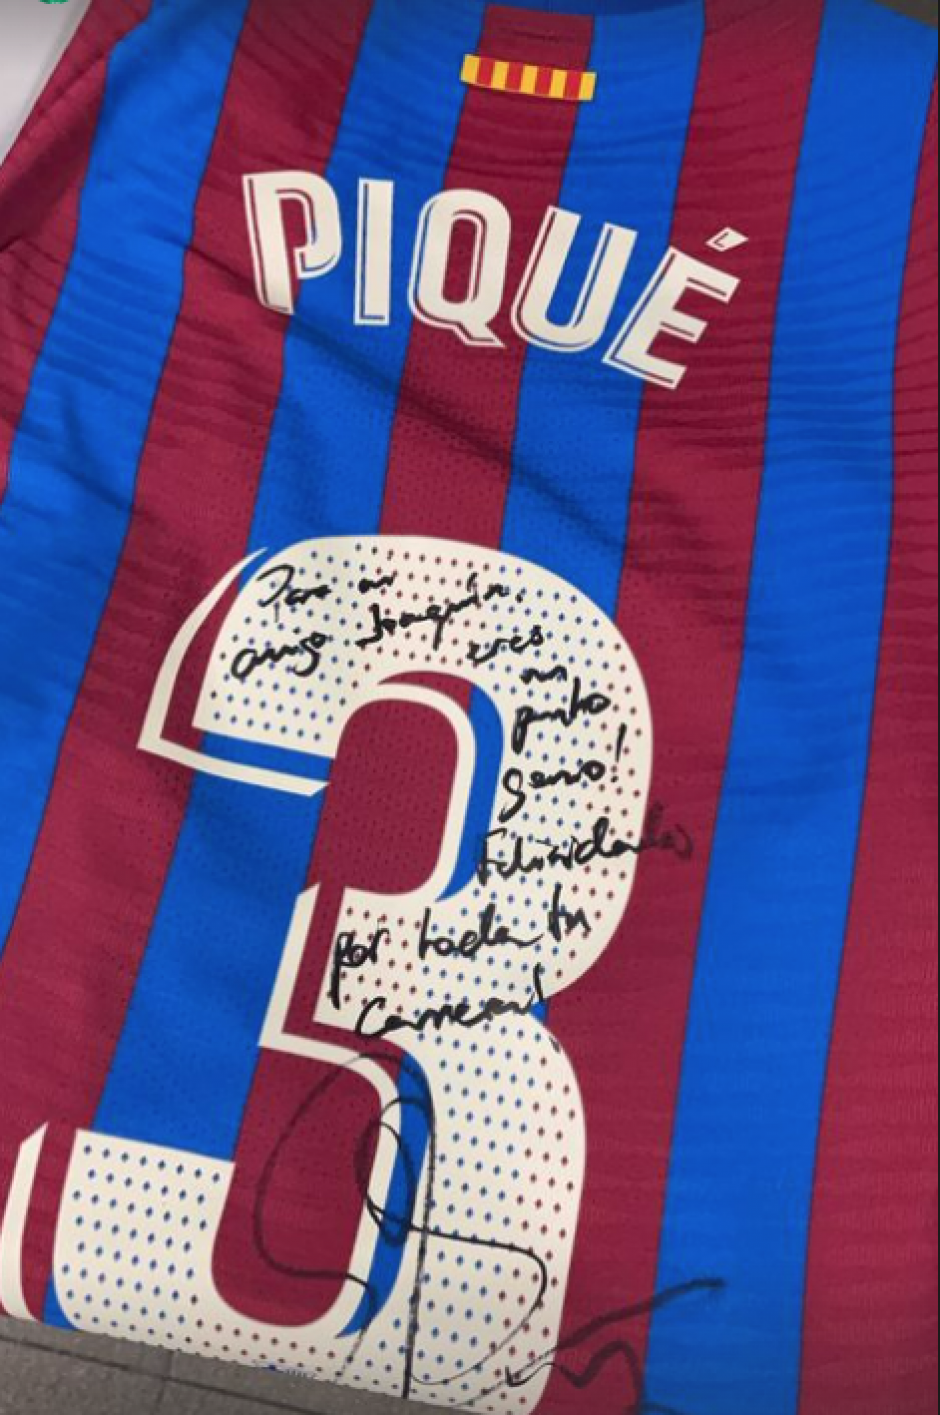 Piqué define a Joaquín en la dedicatoria que le firmó en su camiseta tras el Barça - Betis